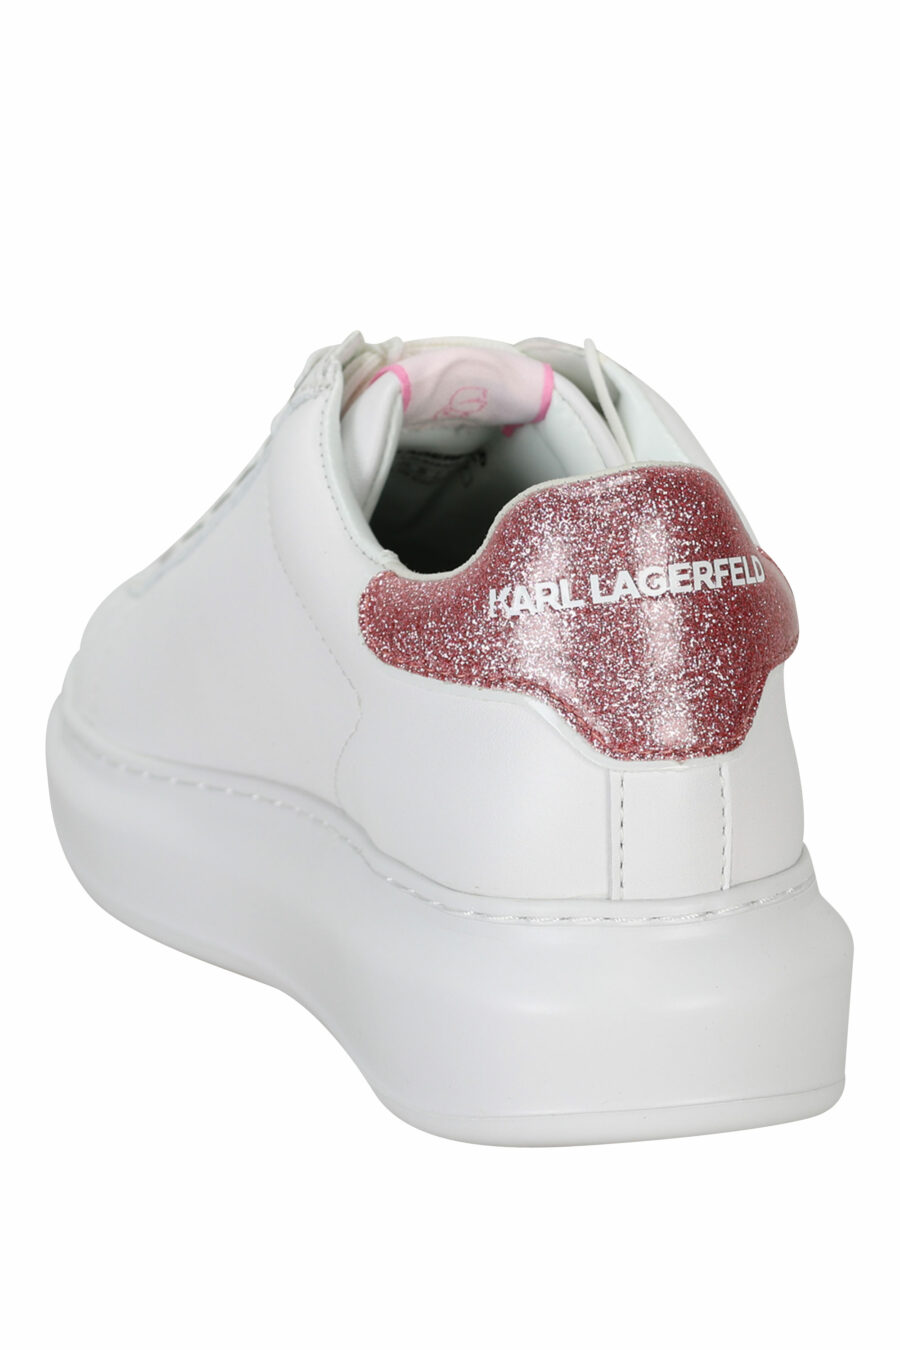 Zapatillas blancas "Kapri" con logo en goma y detalle rosa - 5059529351099 3